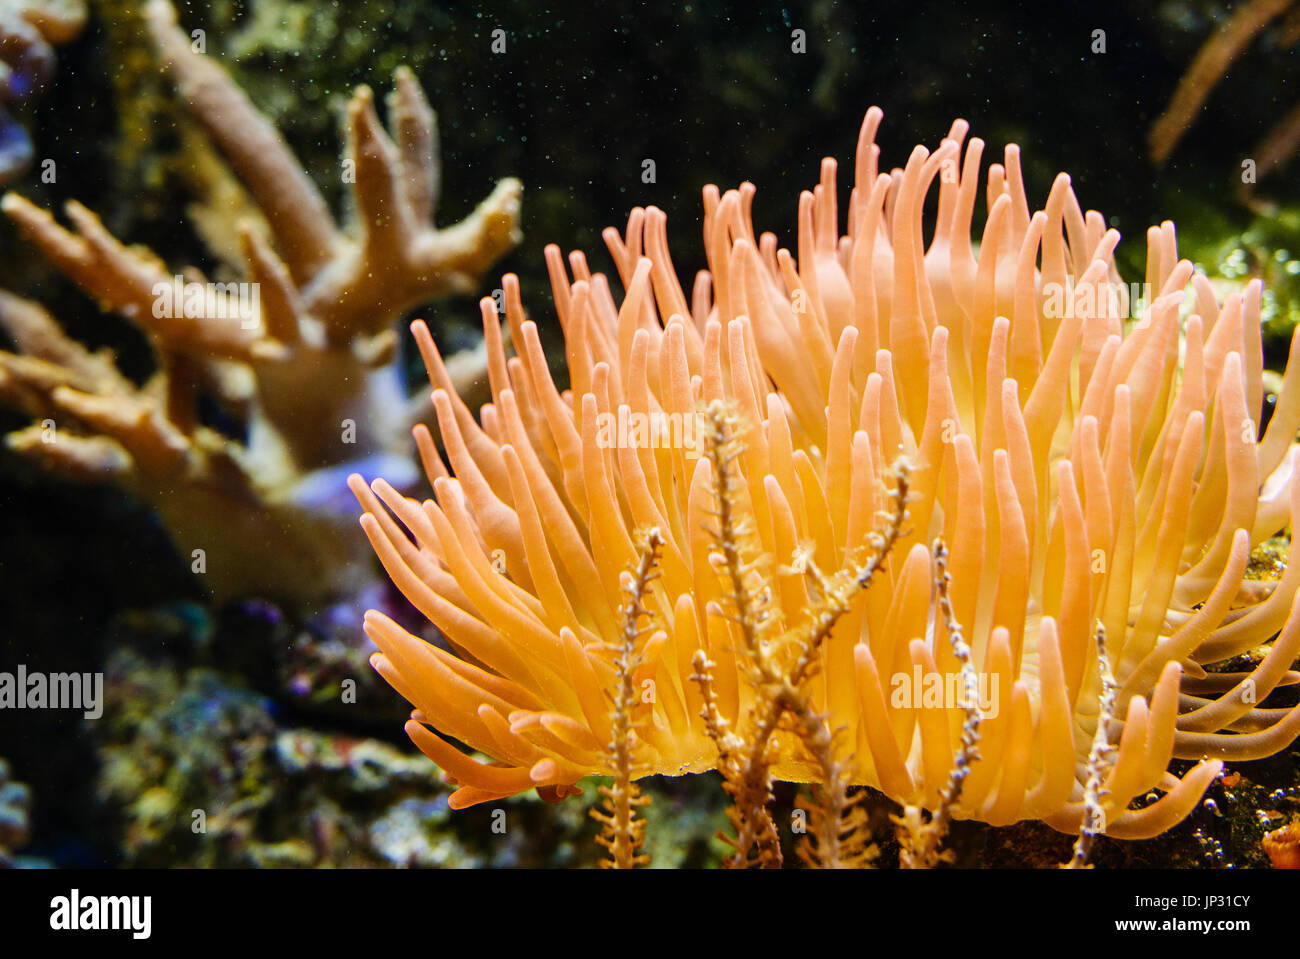 Orange anemone in aquarium with salt water. Stock Photo